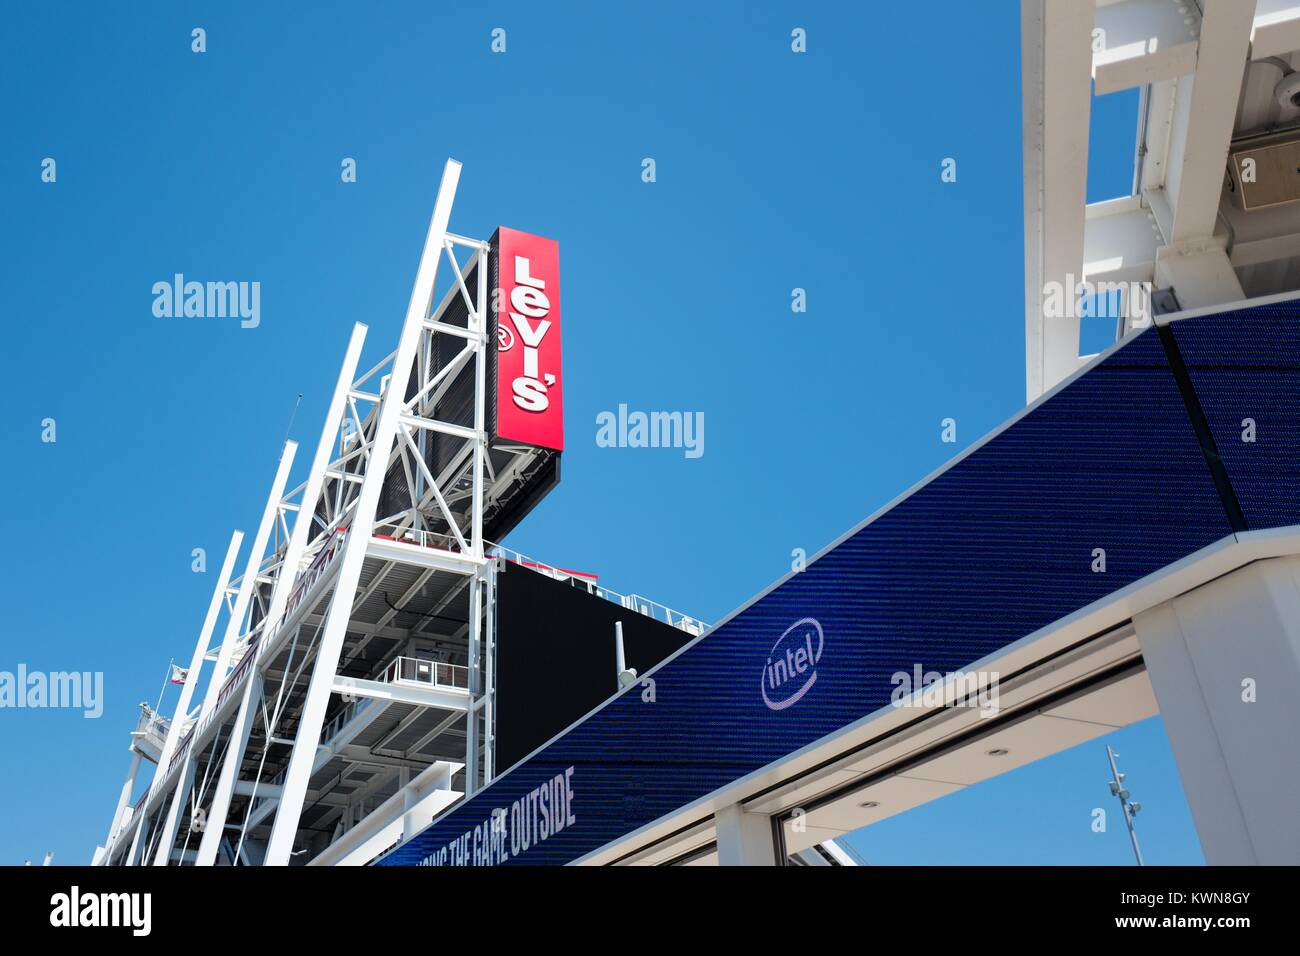 Segno LED con logo Intel a Levi's Stadium, casa dei San Francisco 49ers football team, nella Silicon Valley città di Santa Clara, California, 25 luglio 2017. Foto Stock